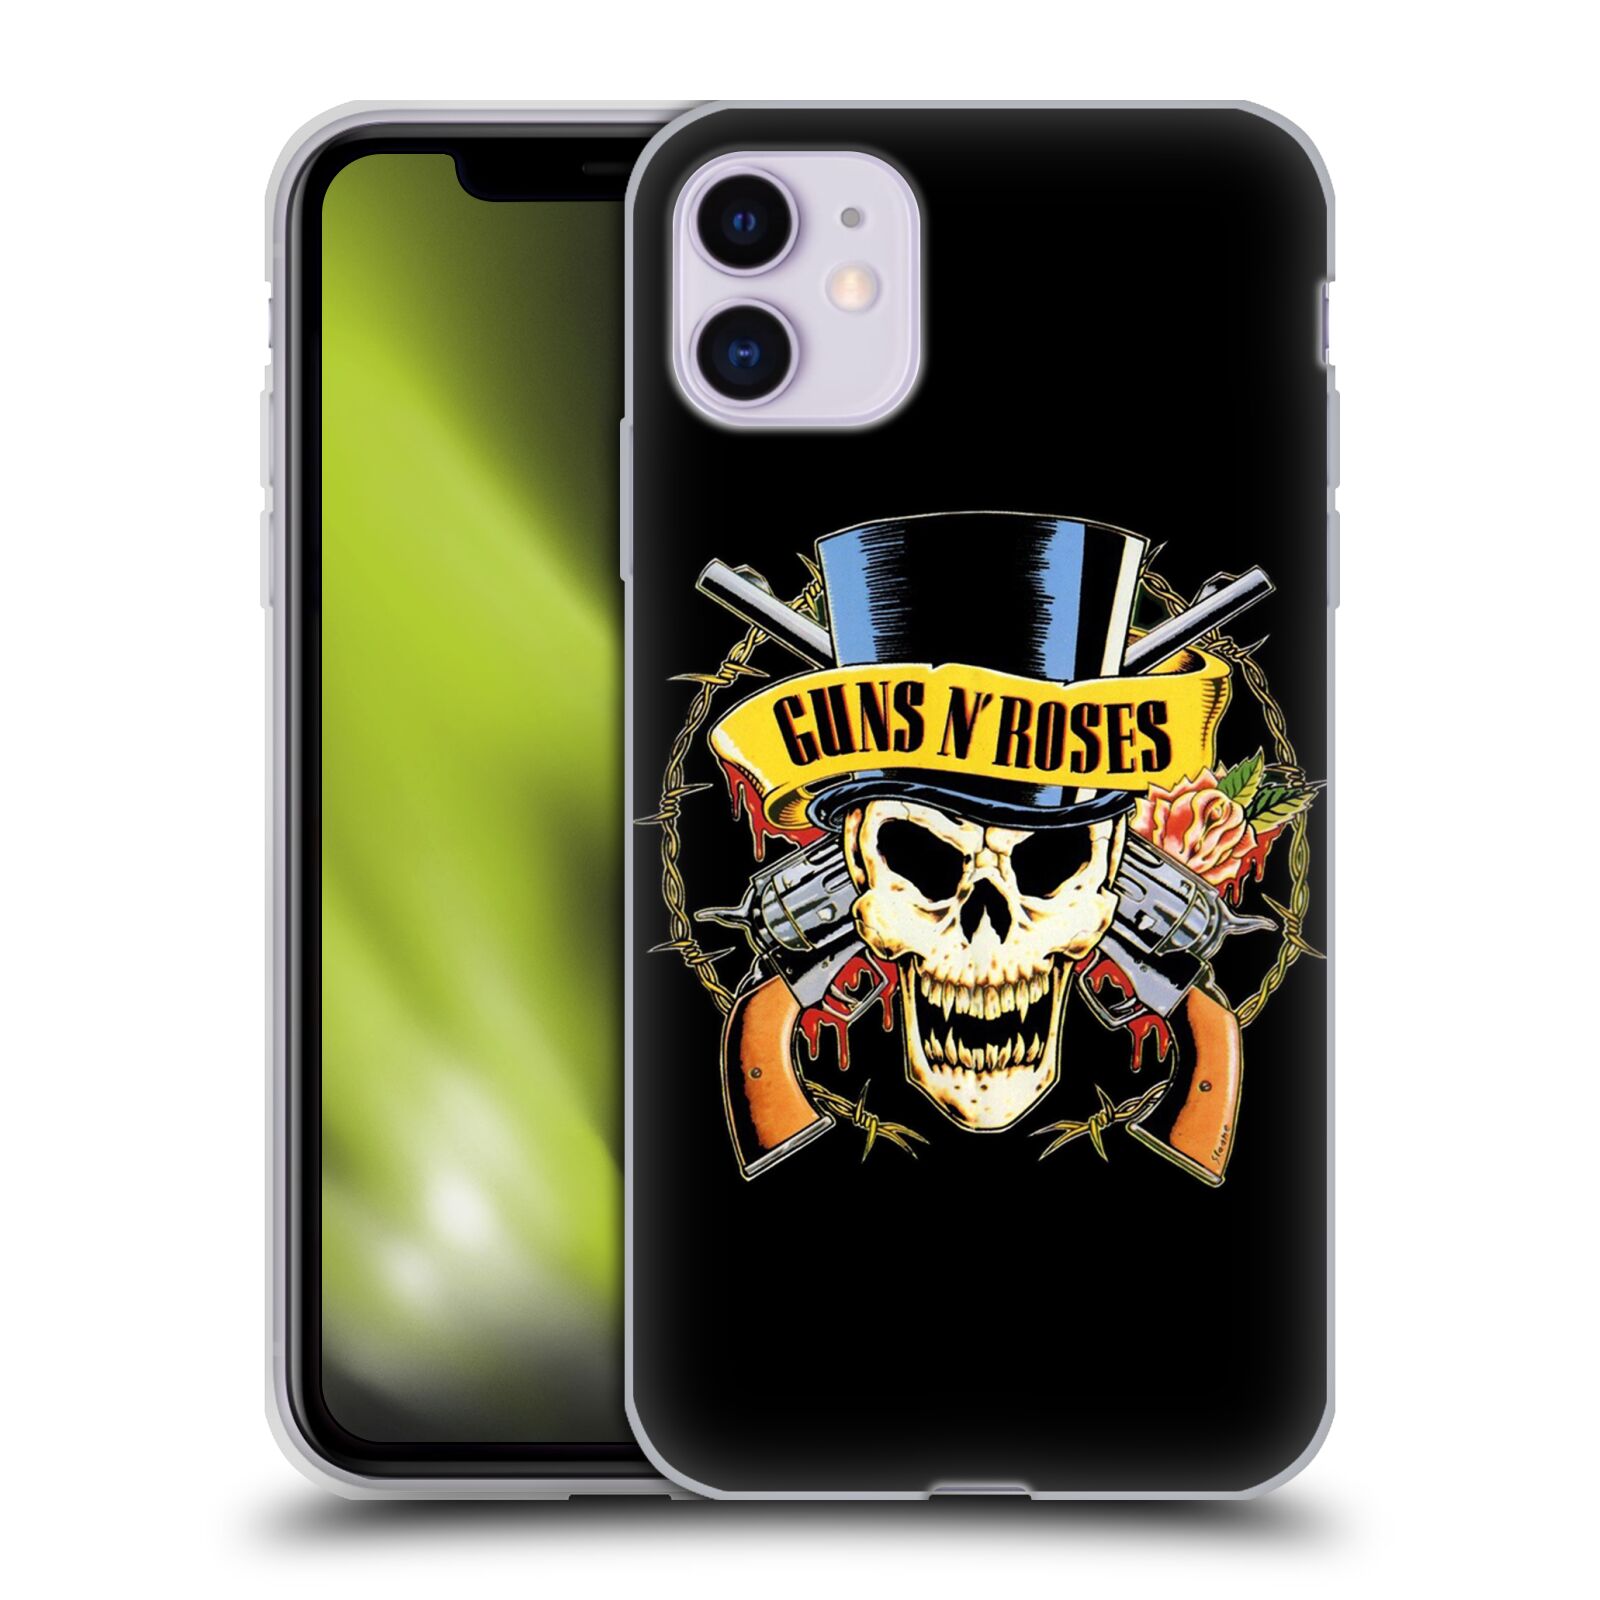 Silikonové pouzdro na mobil Apple iPhone 11 - Head Case - Guns N' Roses - Lebka - AKCE (Silikonový kryt, obal, pouzdro na mobilní telefon Apple iPhone 11 s displejem 6,1" s motivem Guns N' Roses - Lebka)